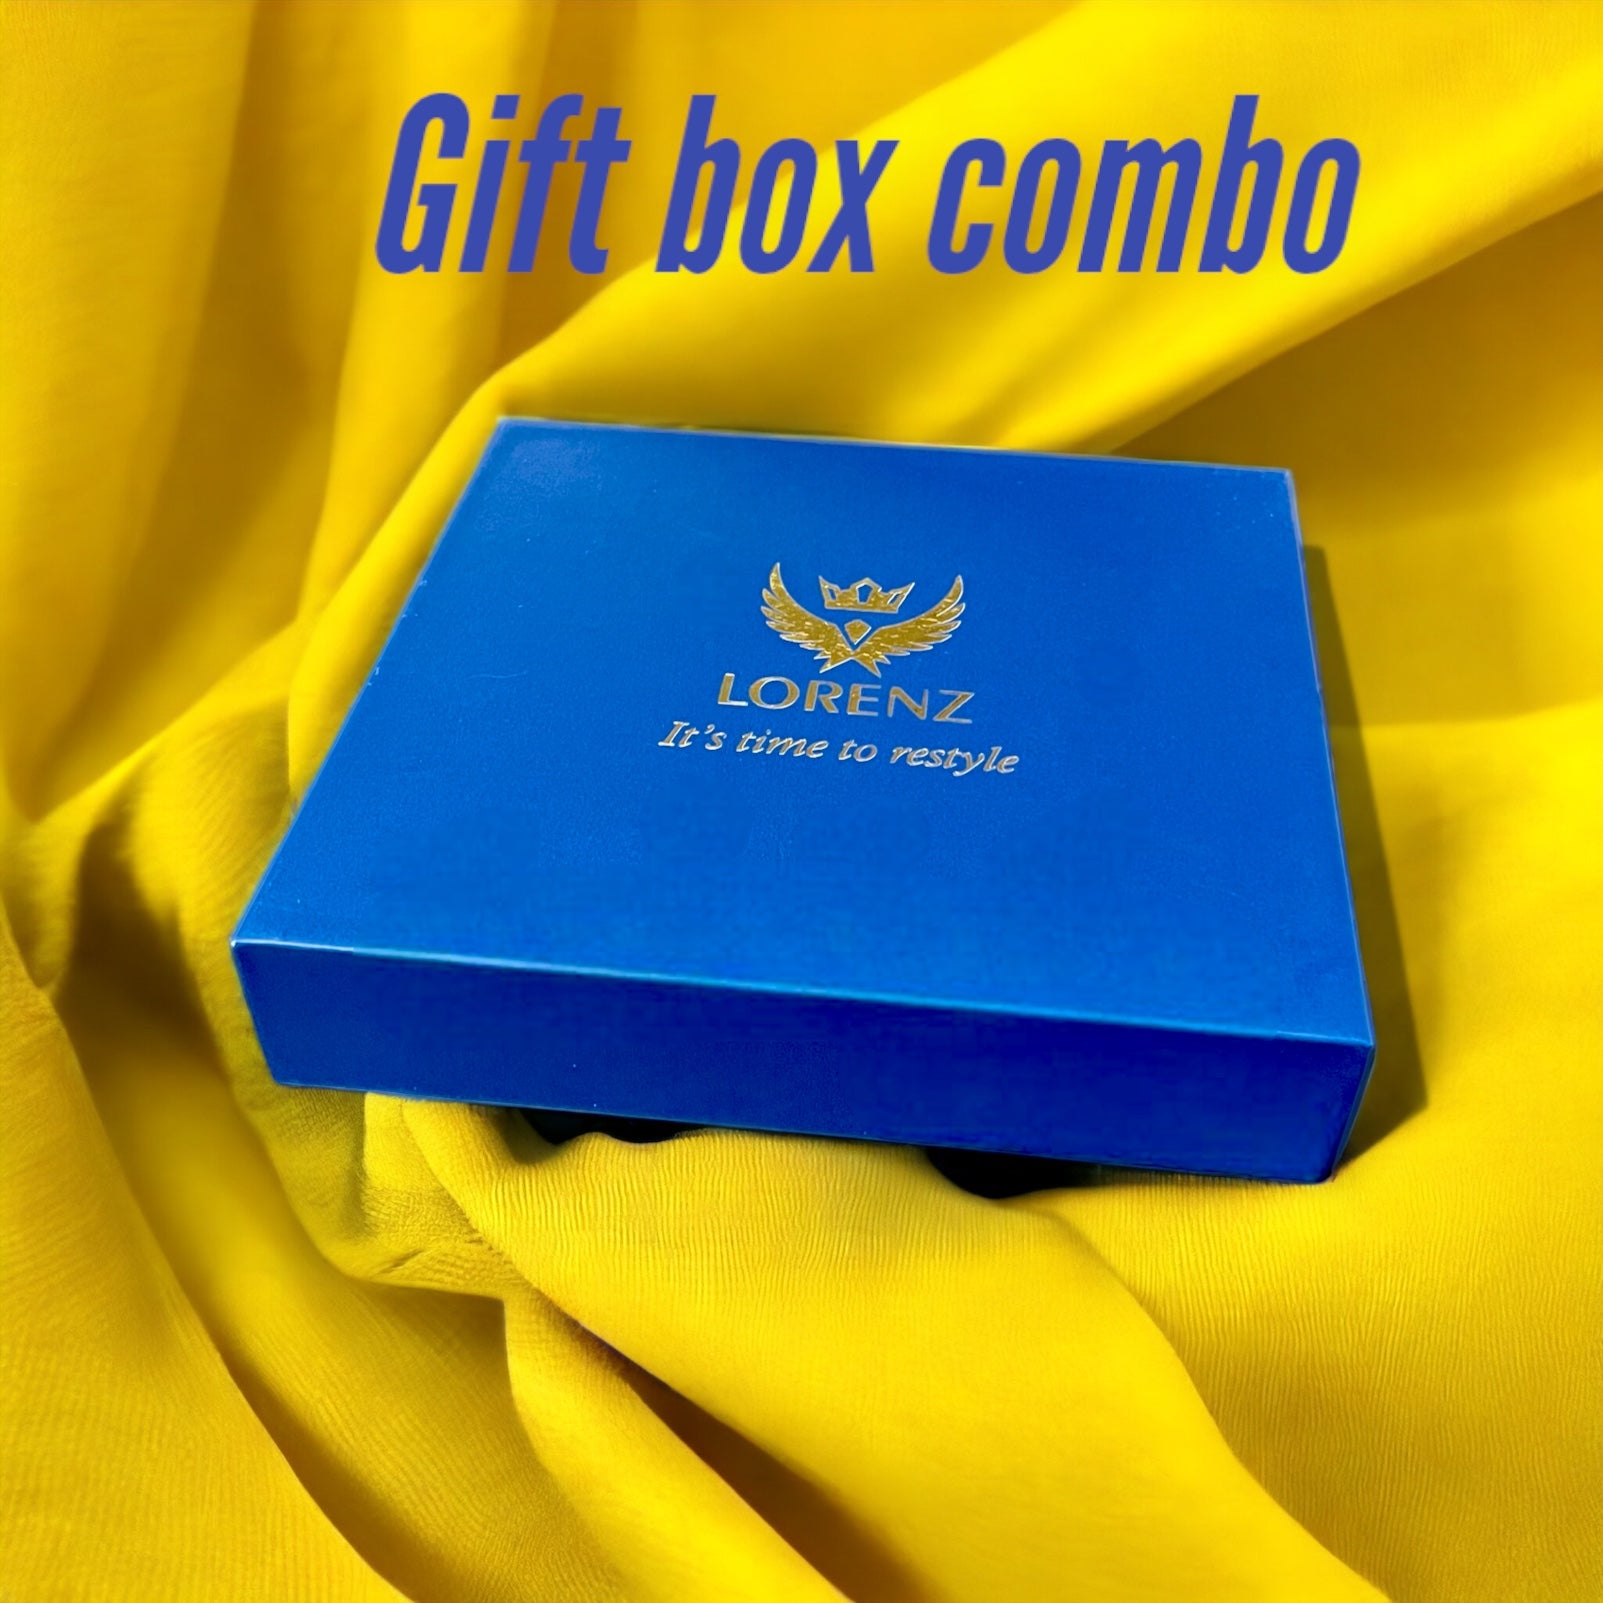 Lorenz Gifts Box Combo